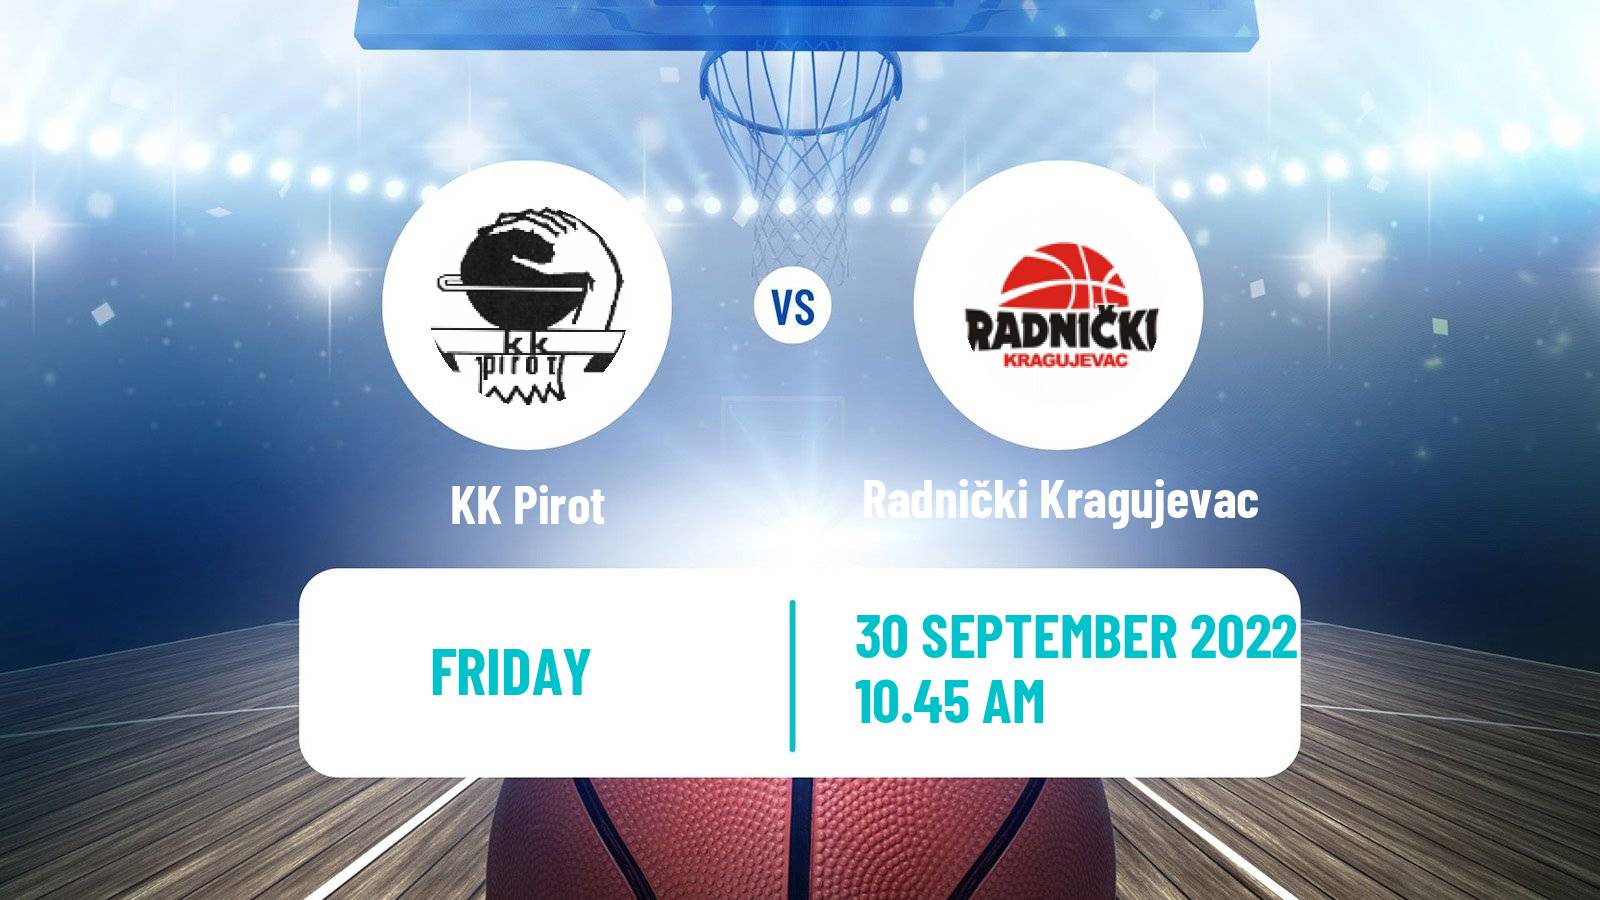 Basketball Club Friendly Basketball Pirot - Radnički Kragujevac